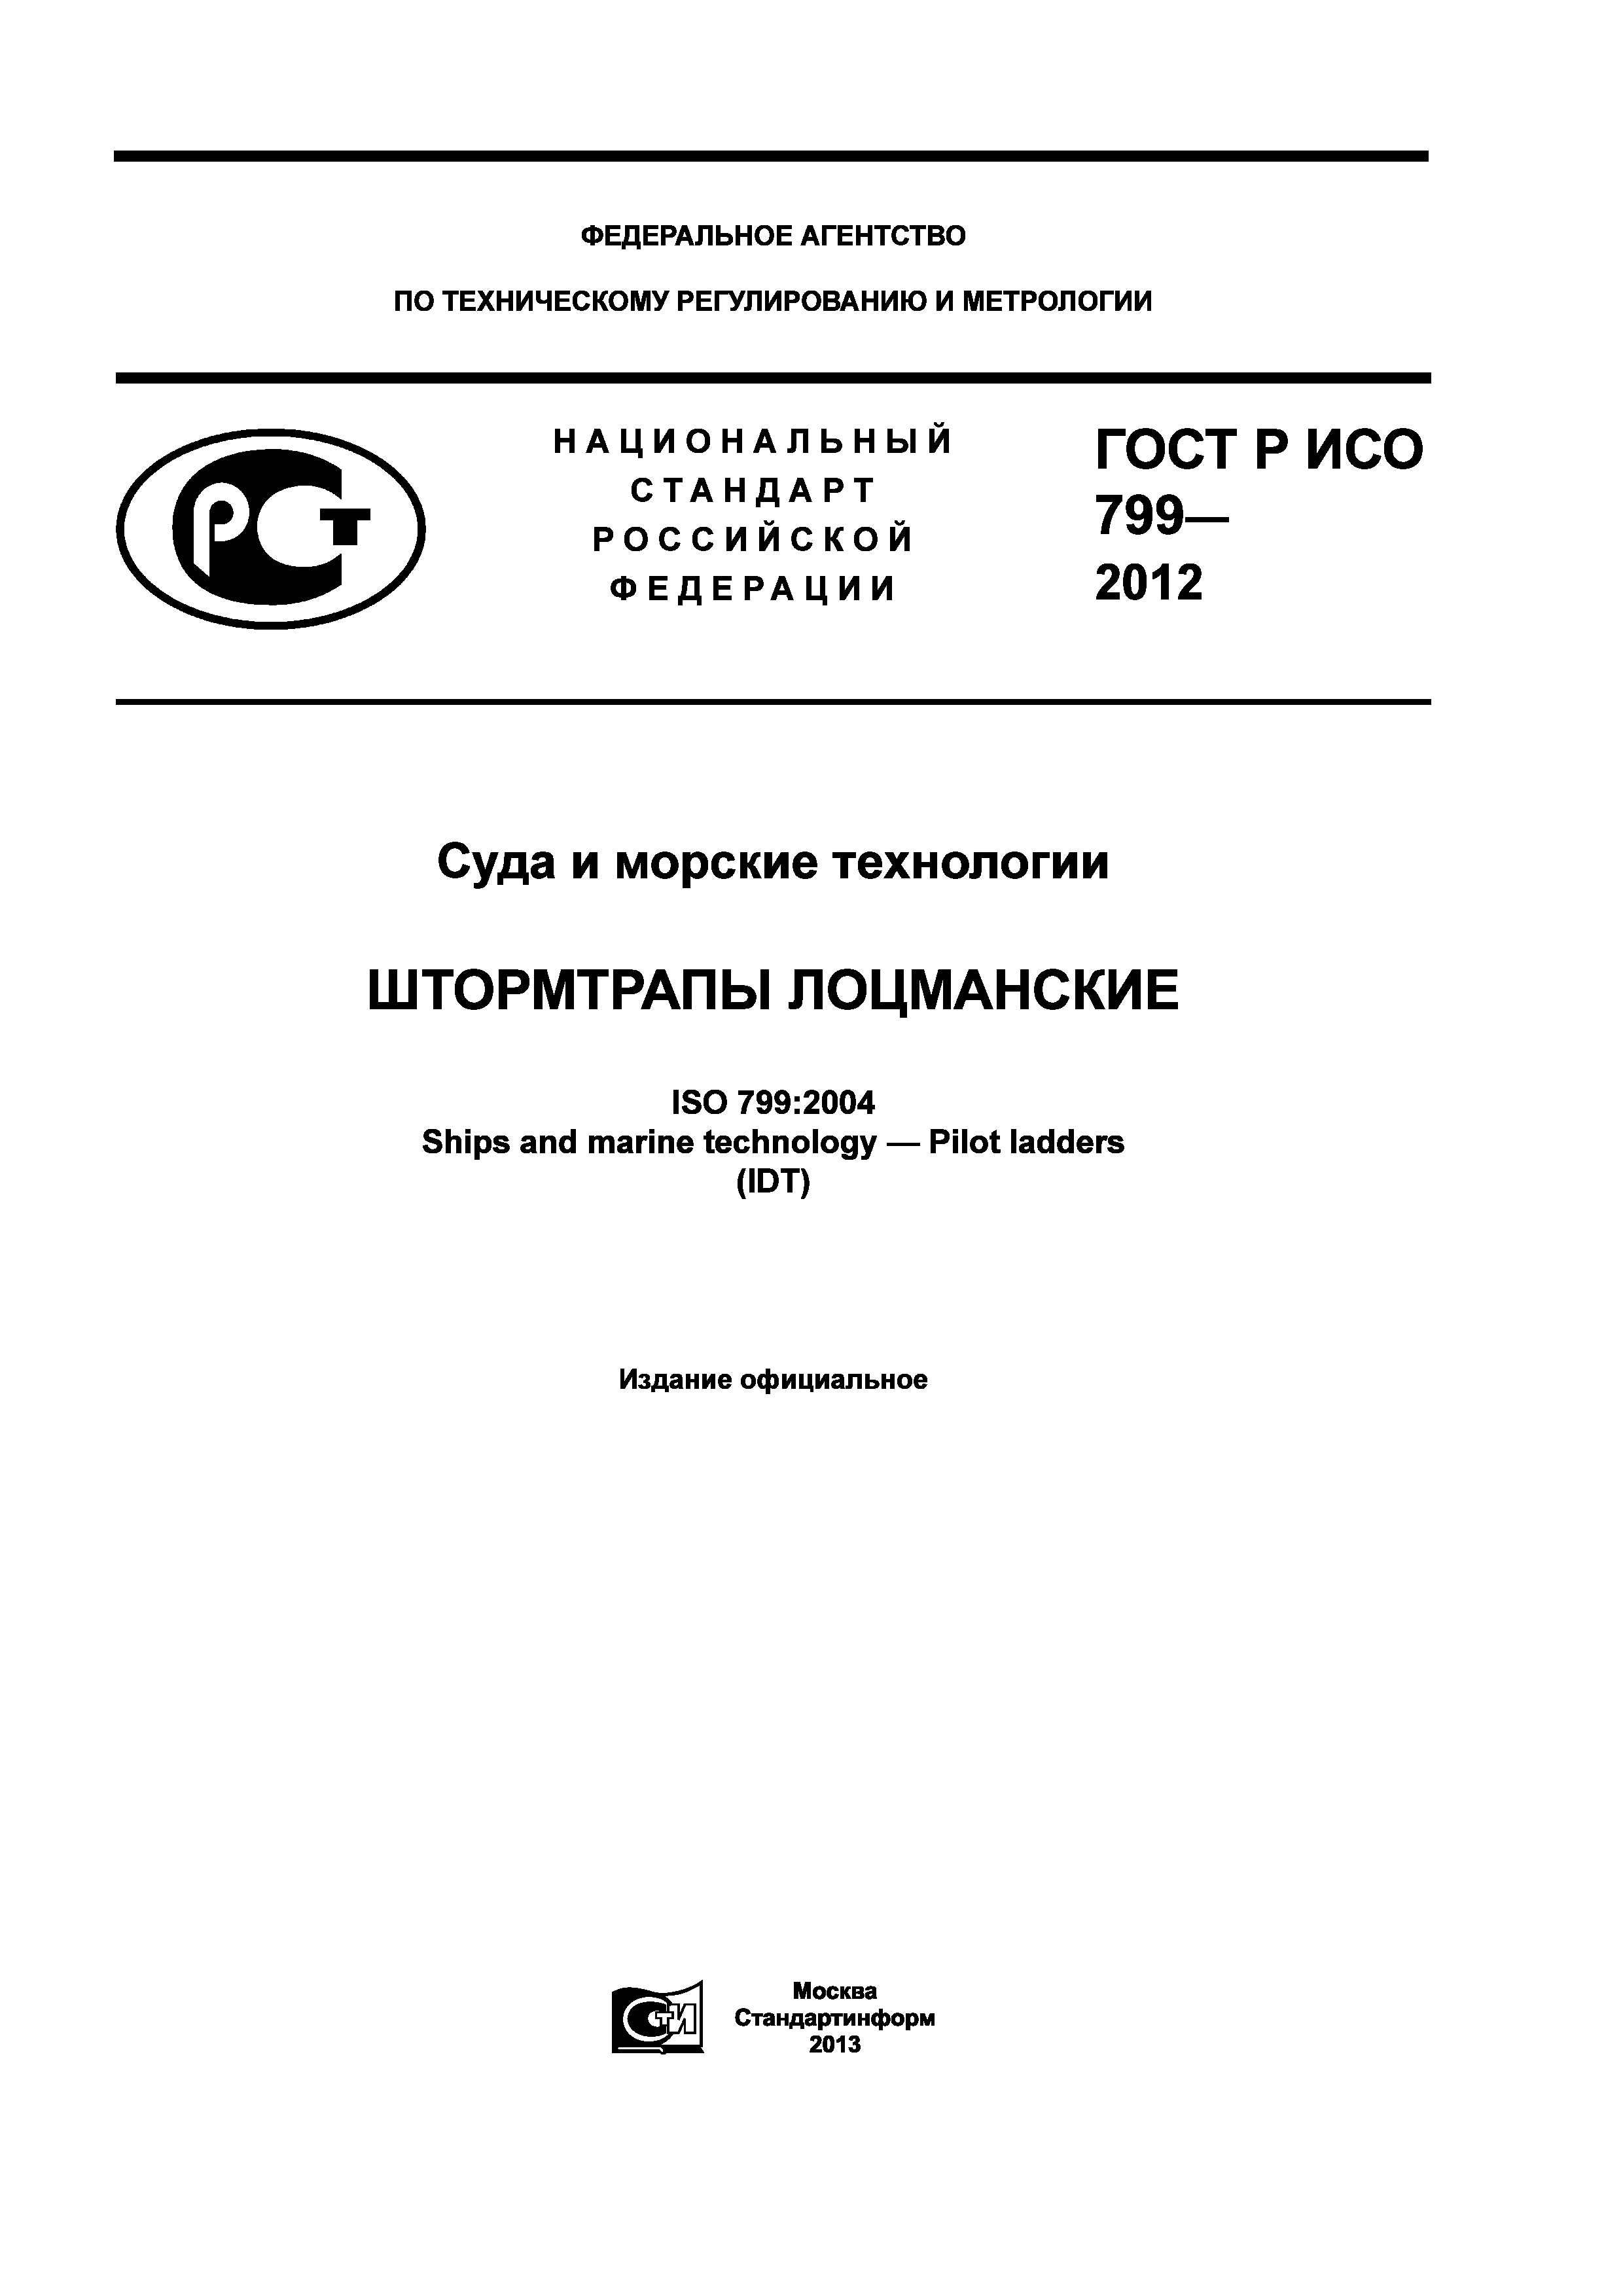 ГОСТ Р ИСО 799-2012